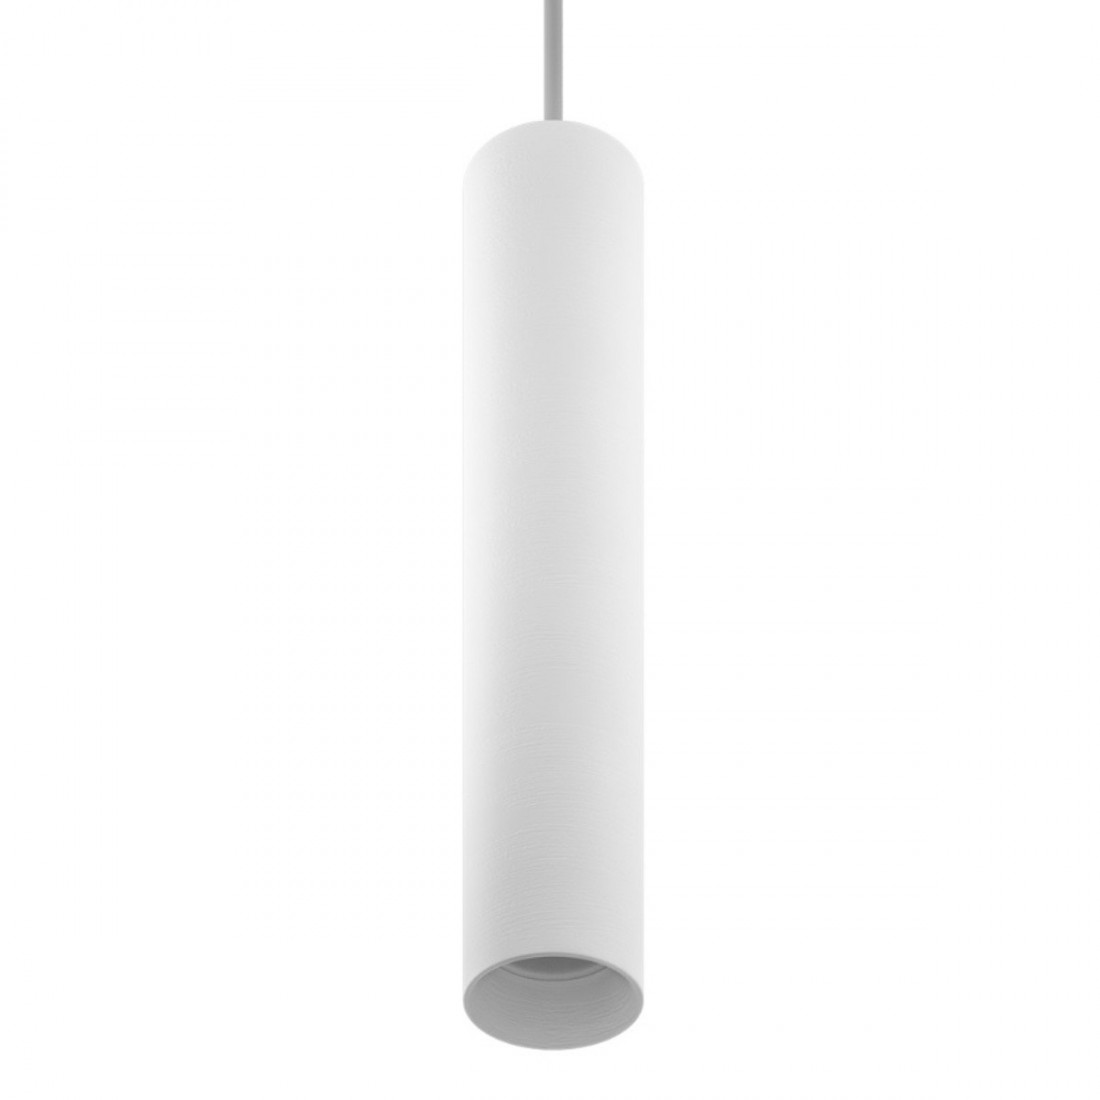 Sospensione BF-5503 B GU10 LED gesso bianco verniciabile lampadario cilindro interno IP20